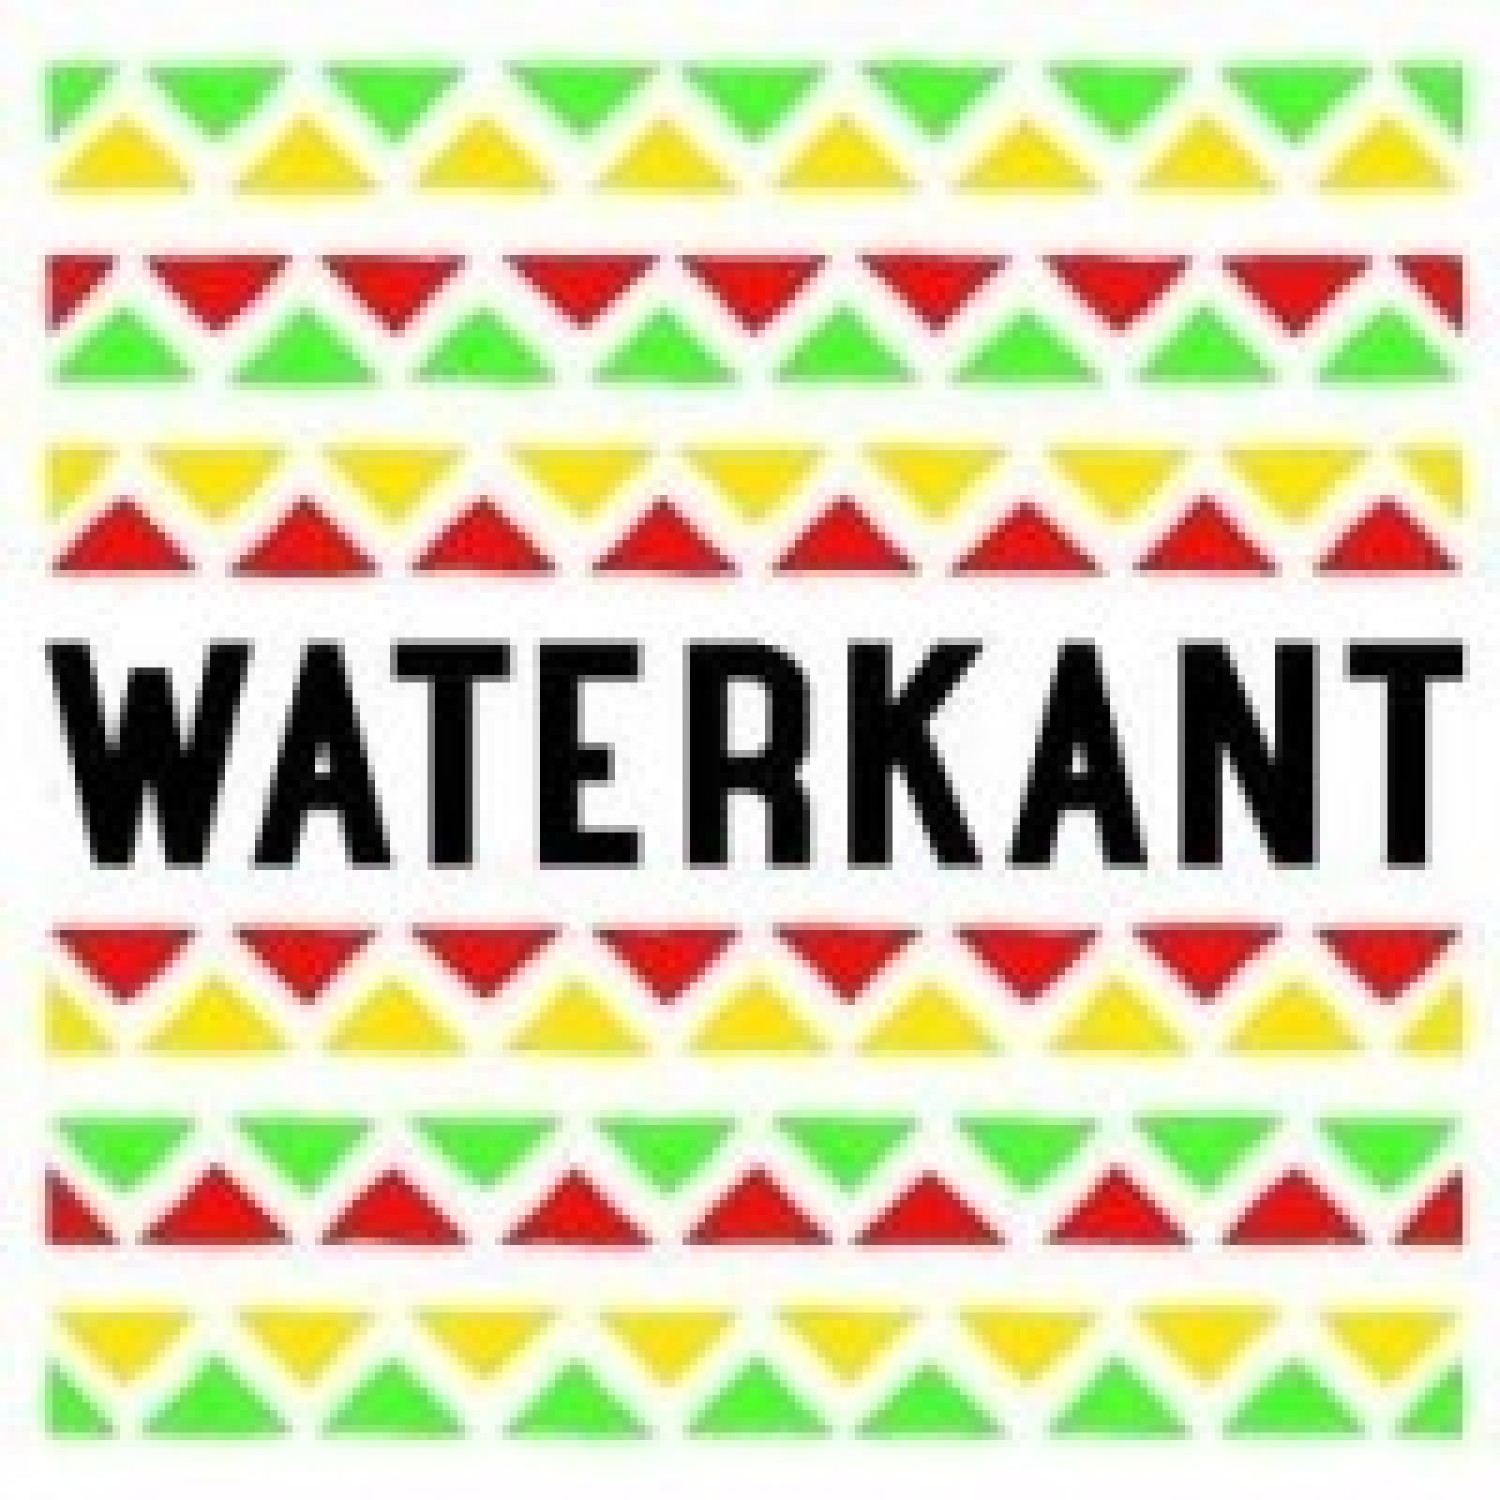 Waterkant Amsterdam